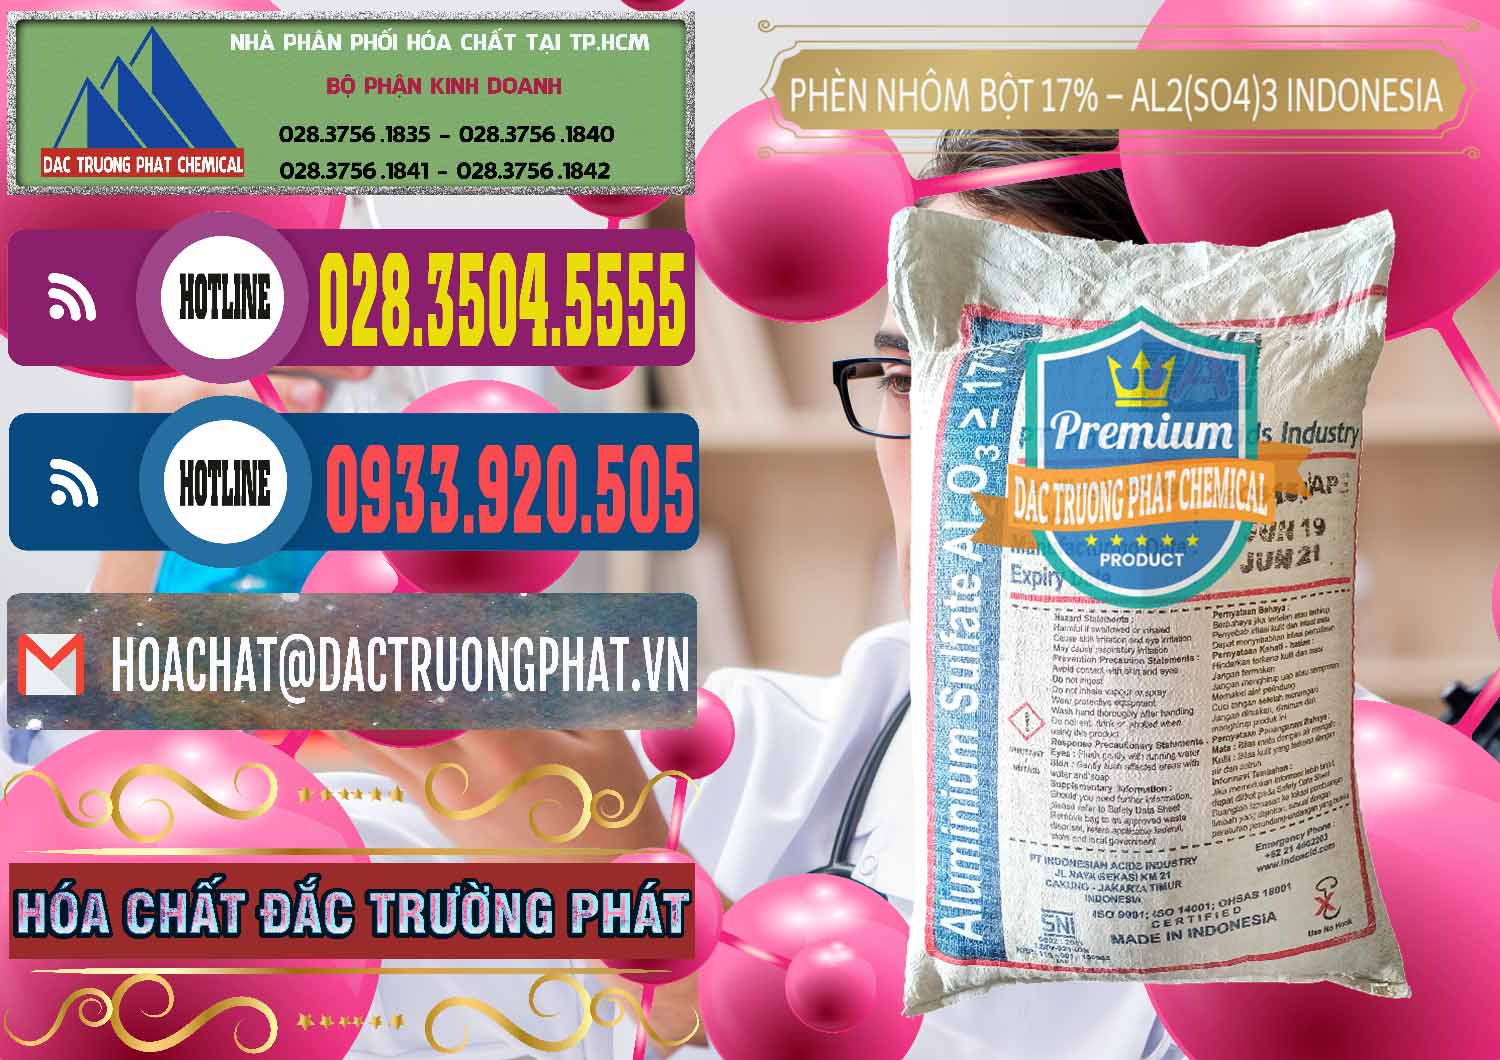 Nhà nhập khẩu _ bán Phèn Nhôm Bột - Al2(SO4)3 17% bao 25kg Indonesia - 0114 - Nơi chuyên nhập khẩu ( cung cấp ) hóa chất tại TP.HCM - muabanhoachat.com.vn